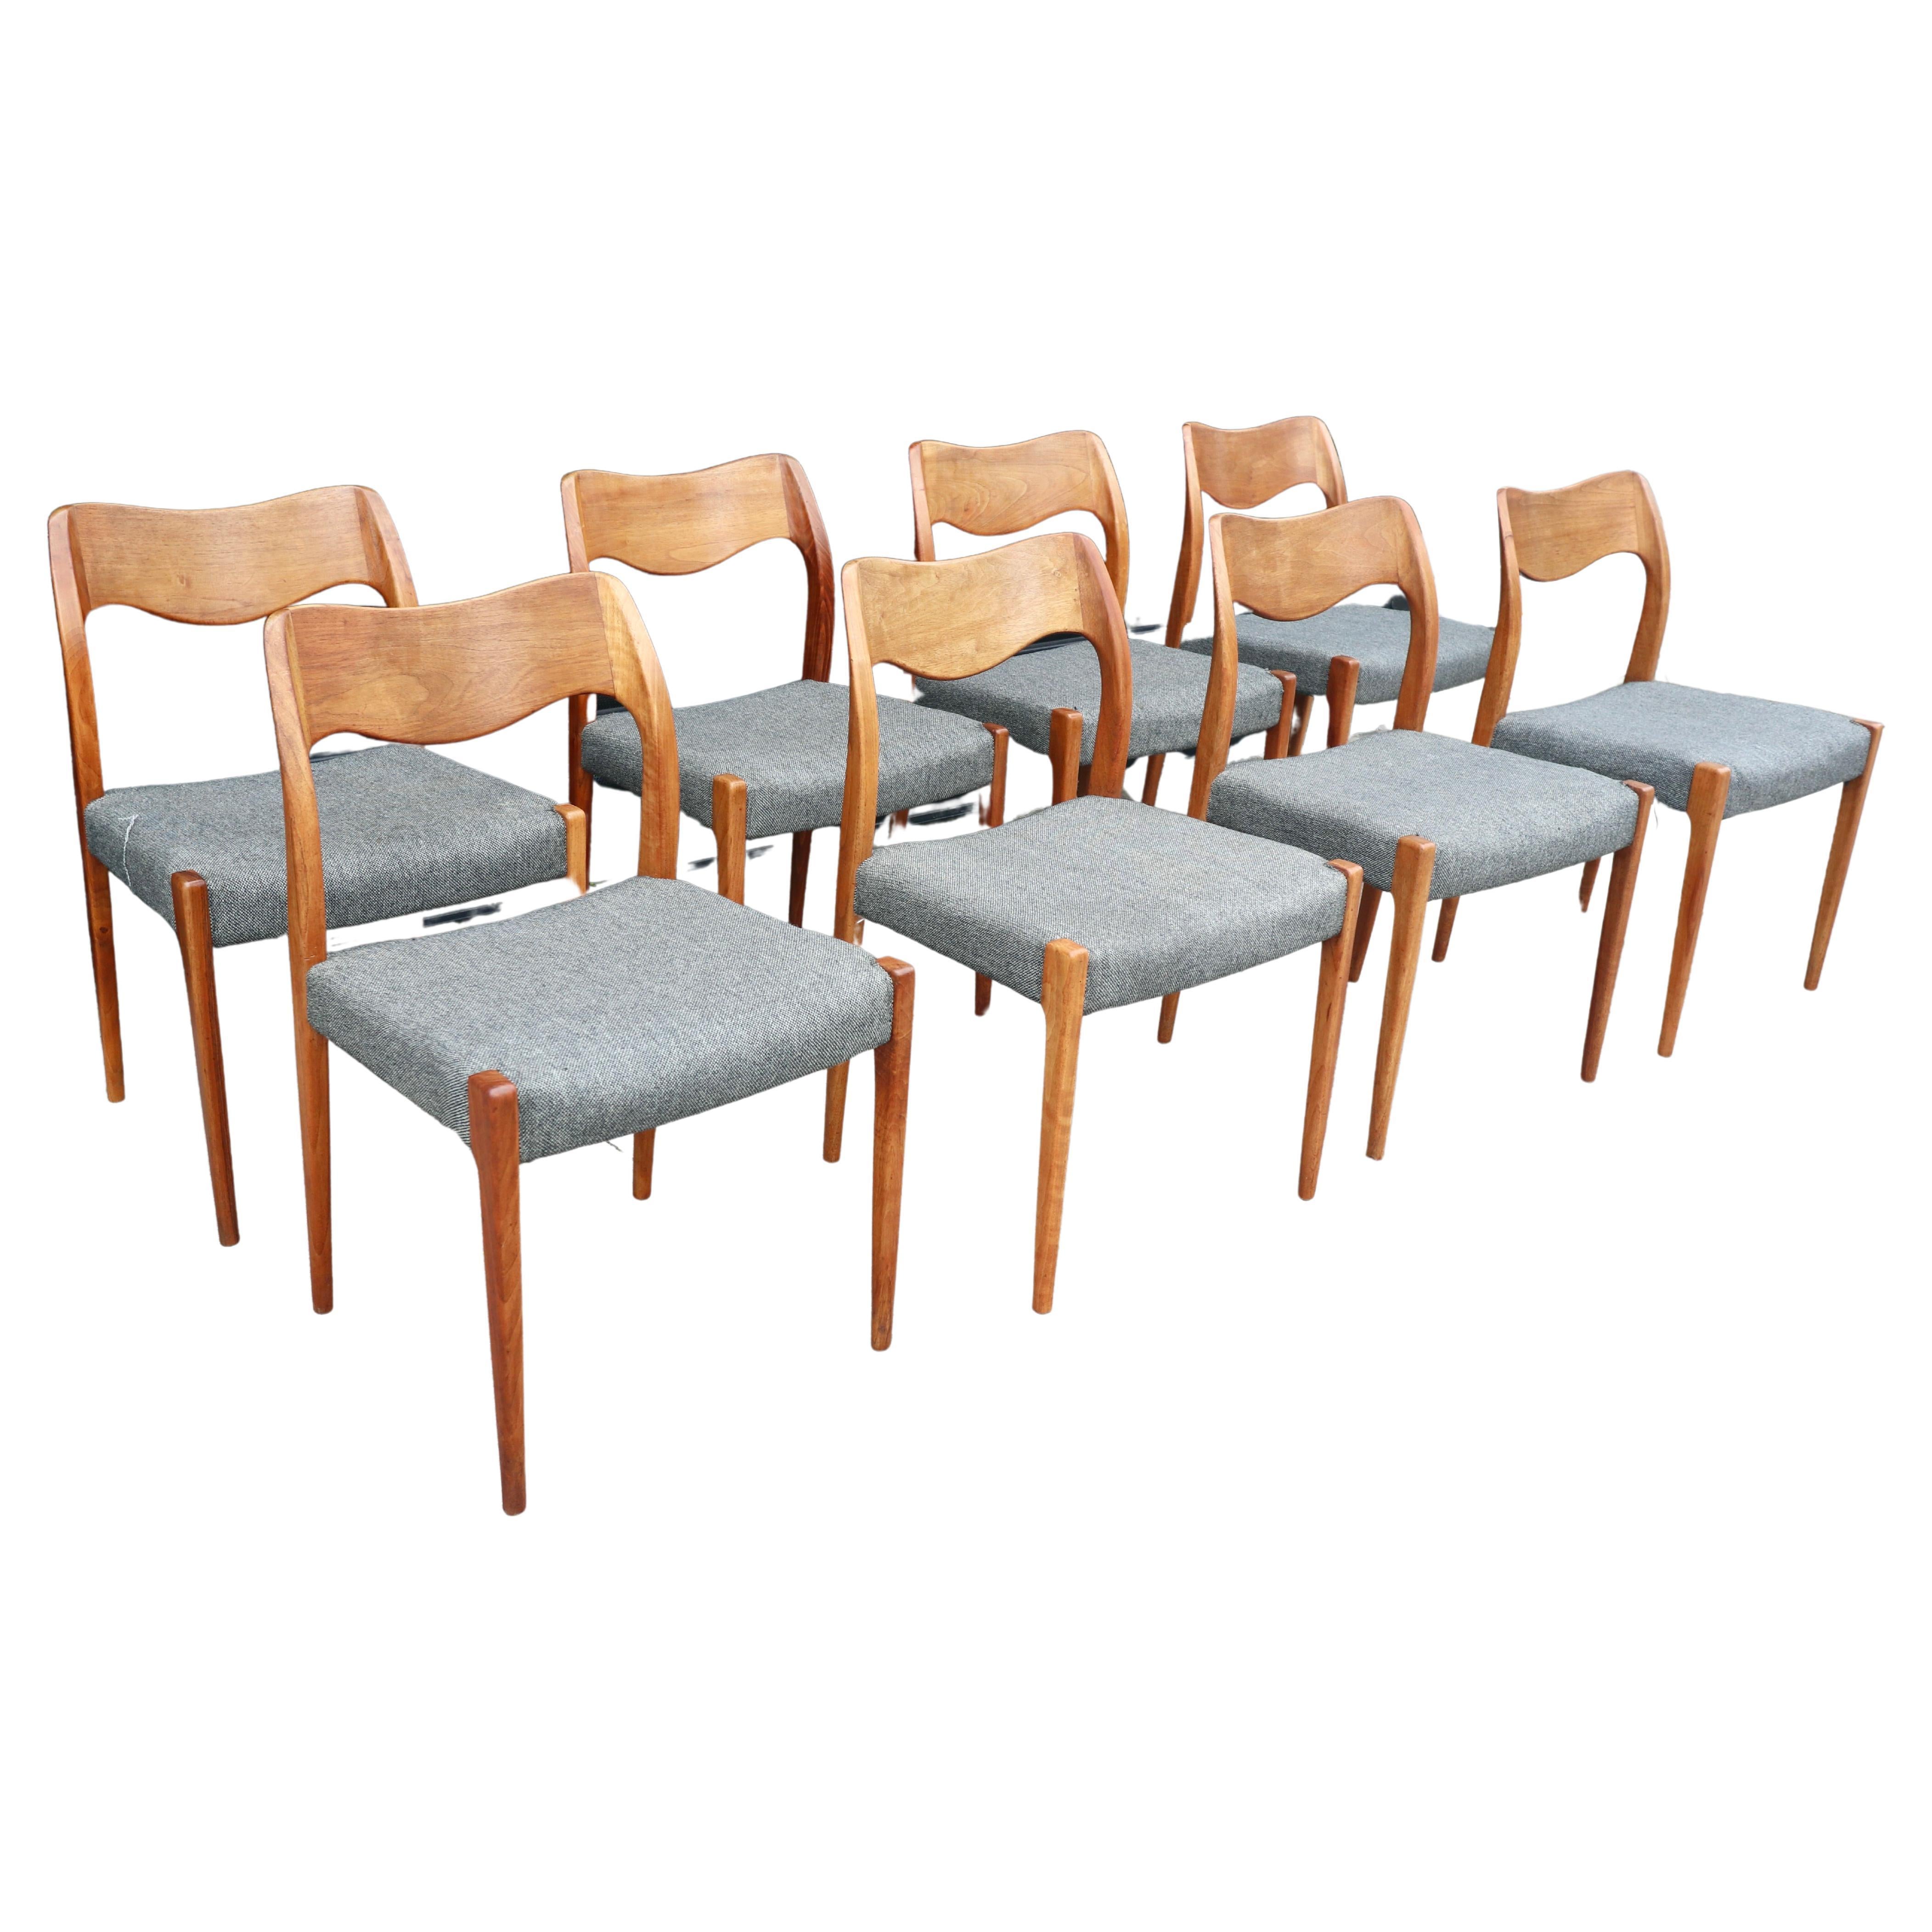 Huit superbes et rares chaises de salle à manger danoises modèle 71, en noyer massif, datant des années 1960. Conçue par I.L.A. et fabriquée par J.L. Møller, ces chaises sont en très bon état. Les châssis en bois ont été nettoyés et huilés avec